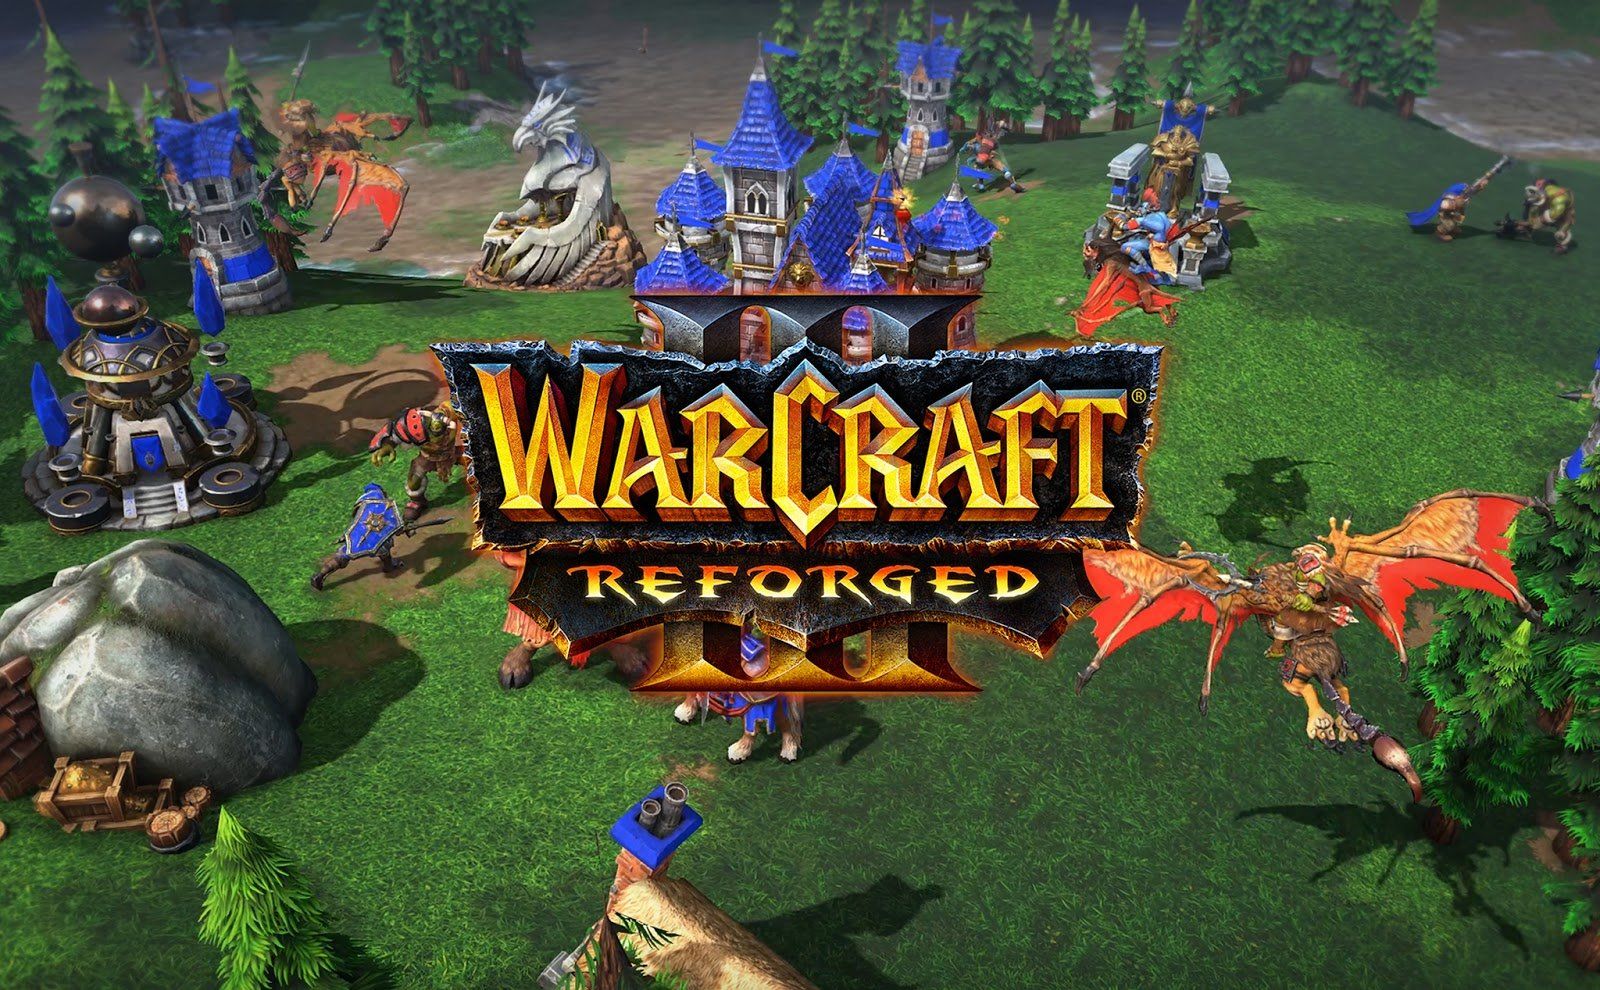 Warcraft 3: Reforged thảm họa tới nỗi game thủ được quyền hoàn tiền trong vòng 1 nốt nhạc